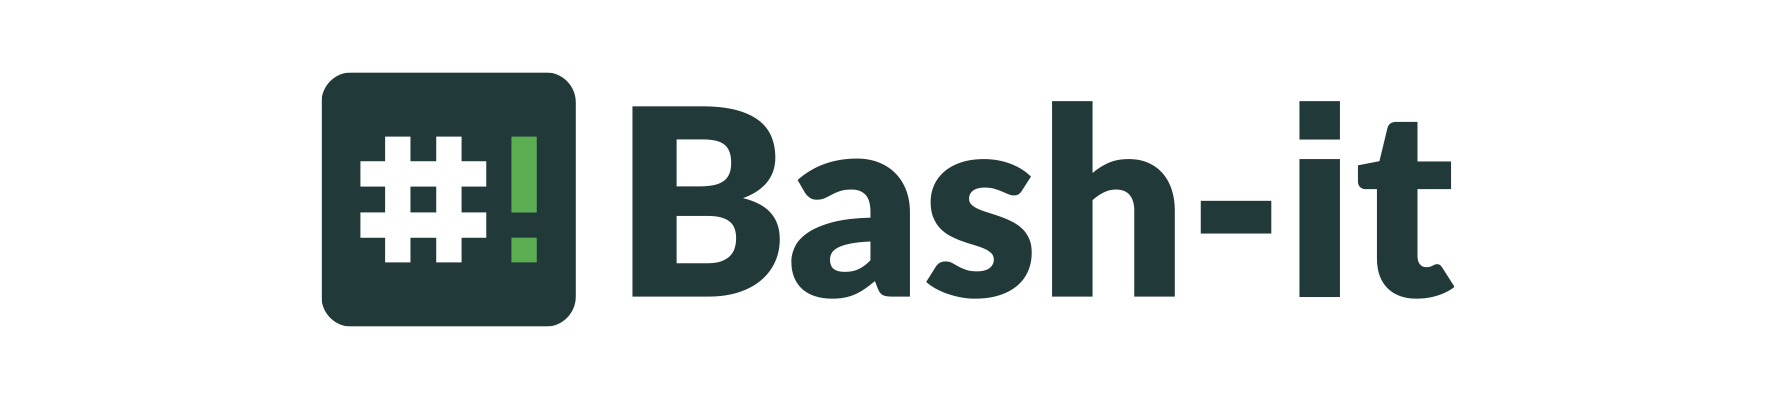 Bash-it